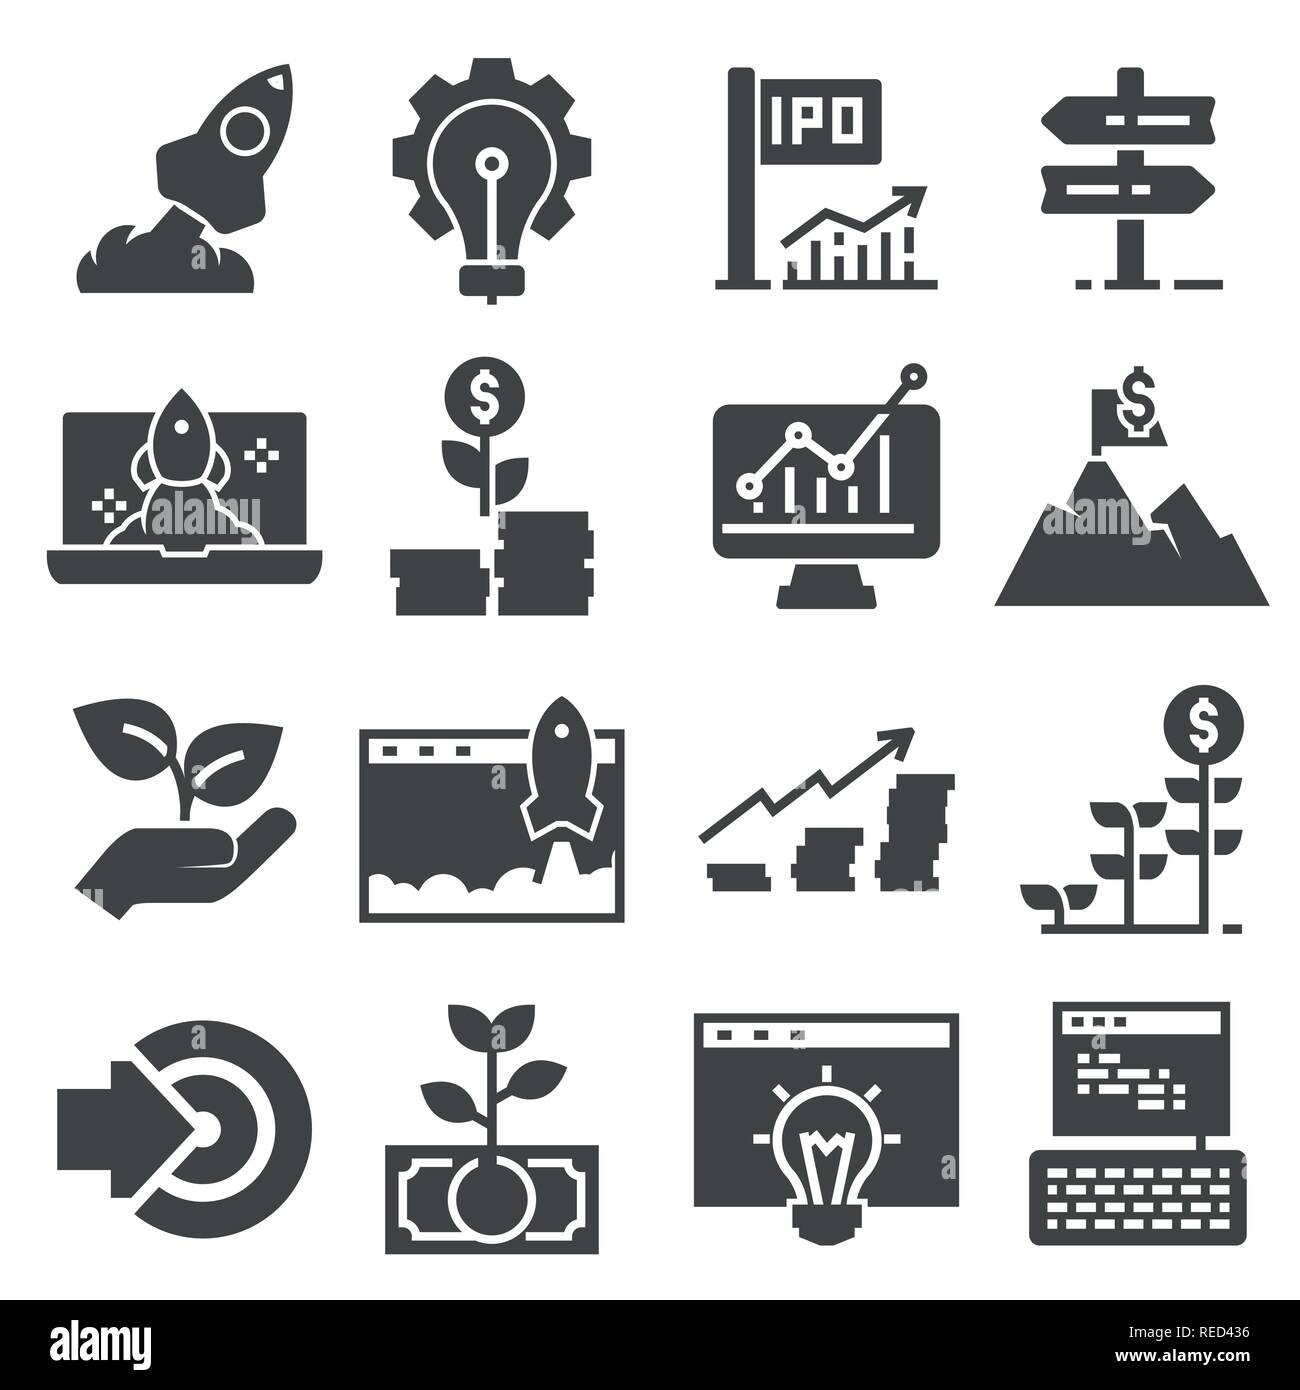 Start Business Icon Set auf weißem Hintergrund. Vektorgrafiken Stock Vektor